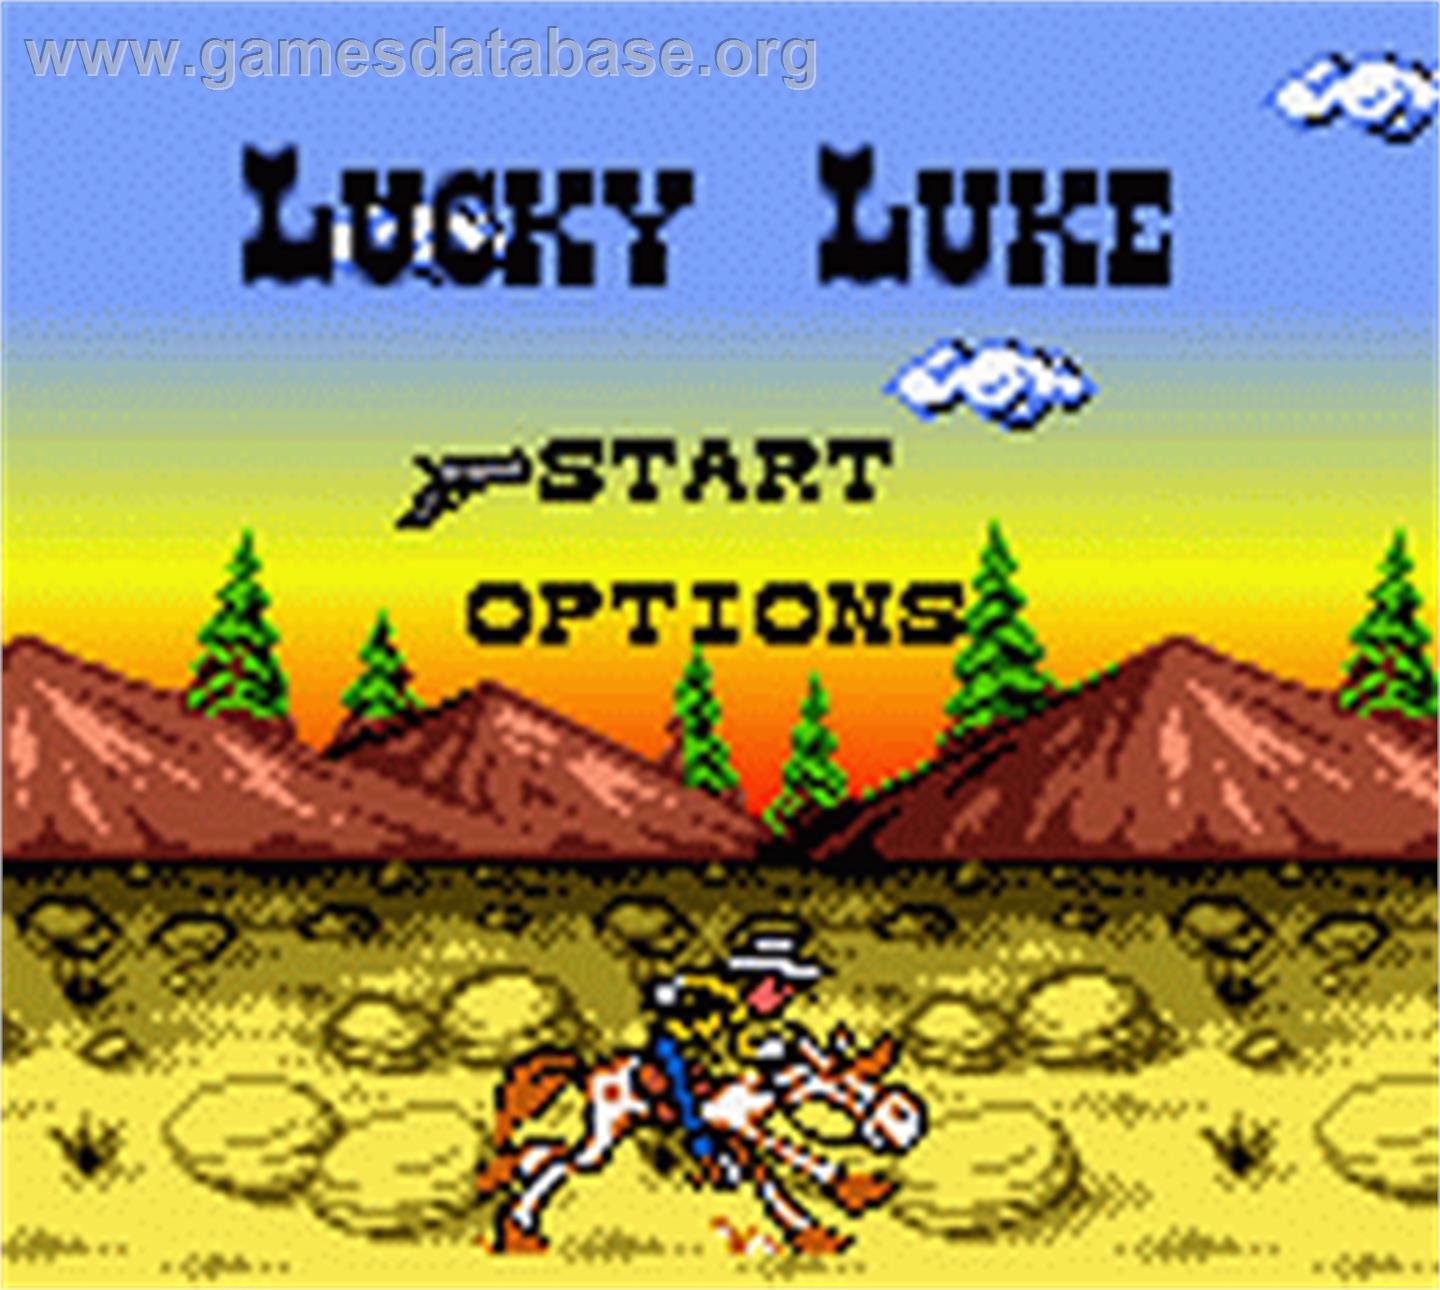 Lucky Luke: Desperado Train - Nintendo Game Boy Color - Artwork - Title Screen